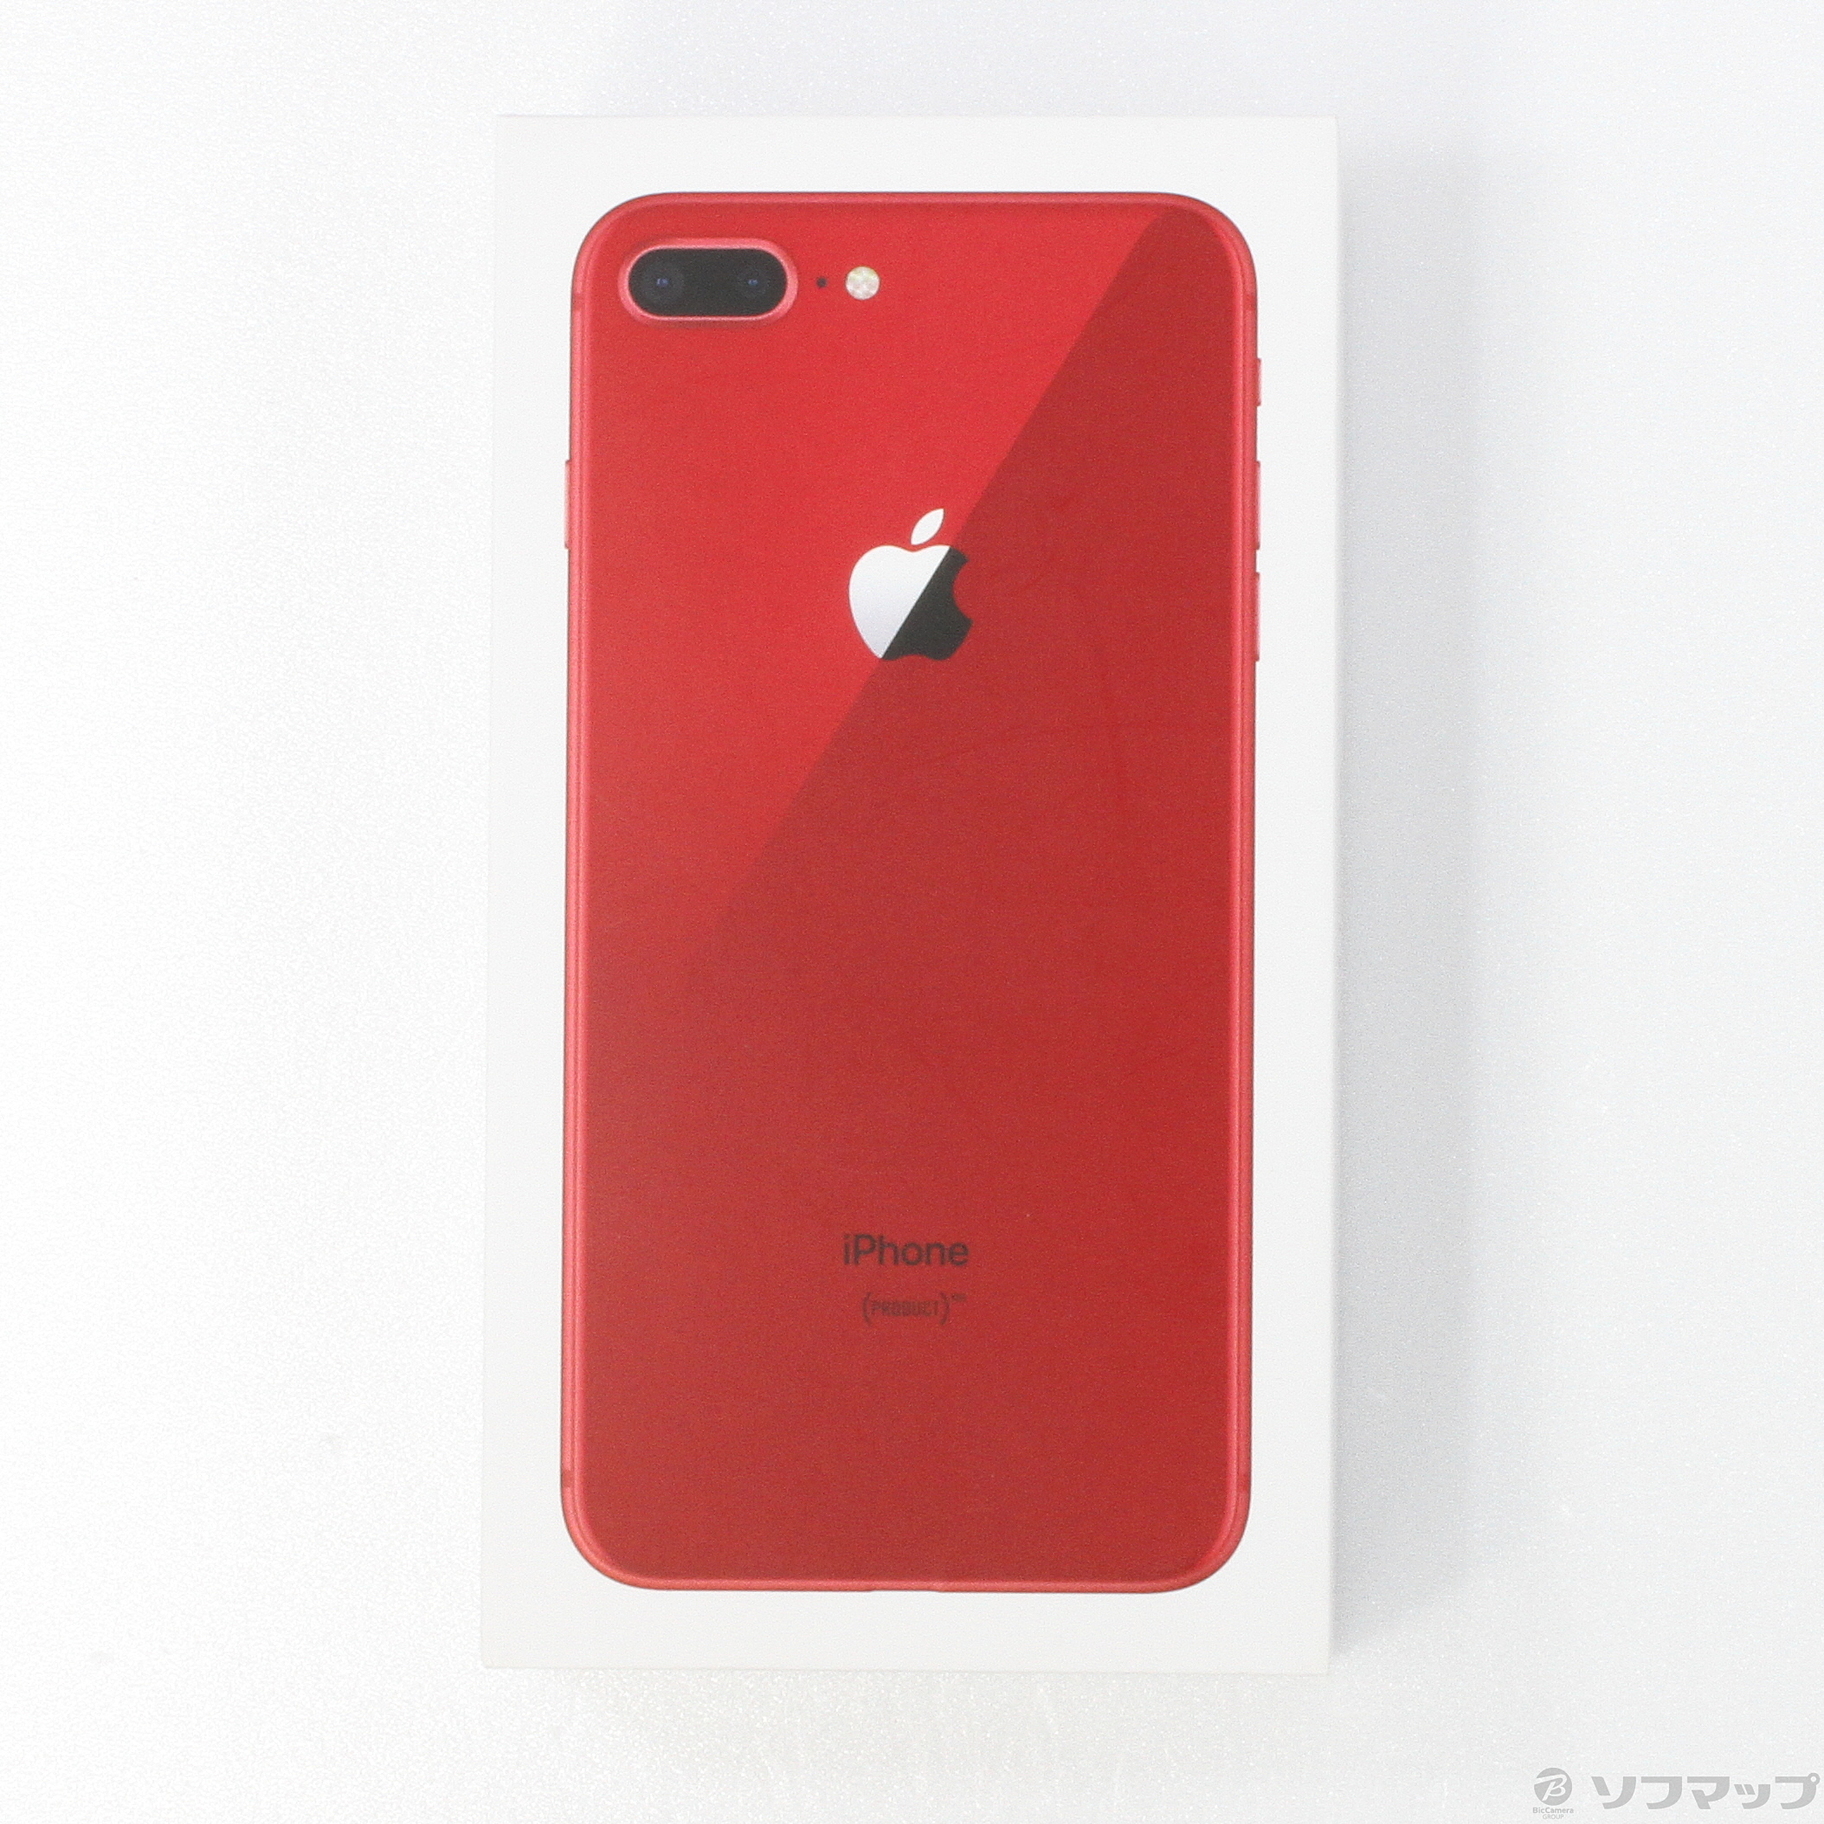 ファッション雑貨 iPhone 8 プロダクト レッド RED SIMロック解除済み 